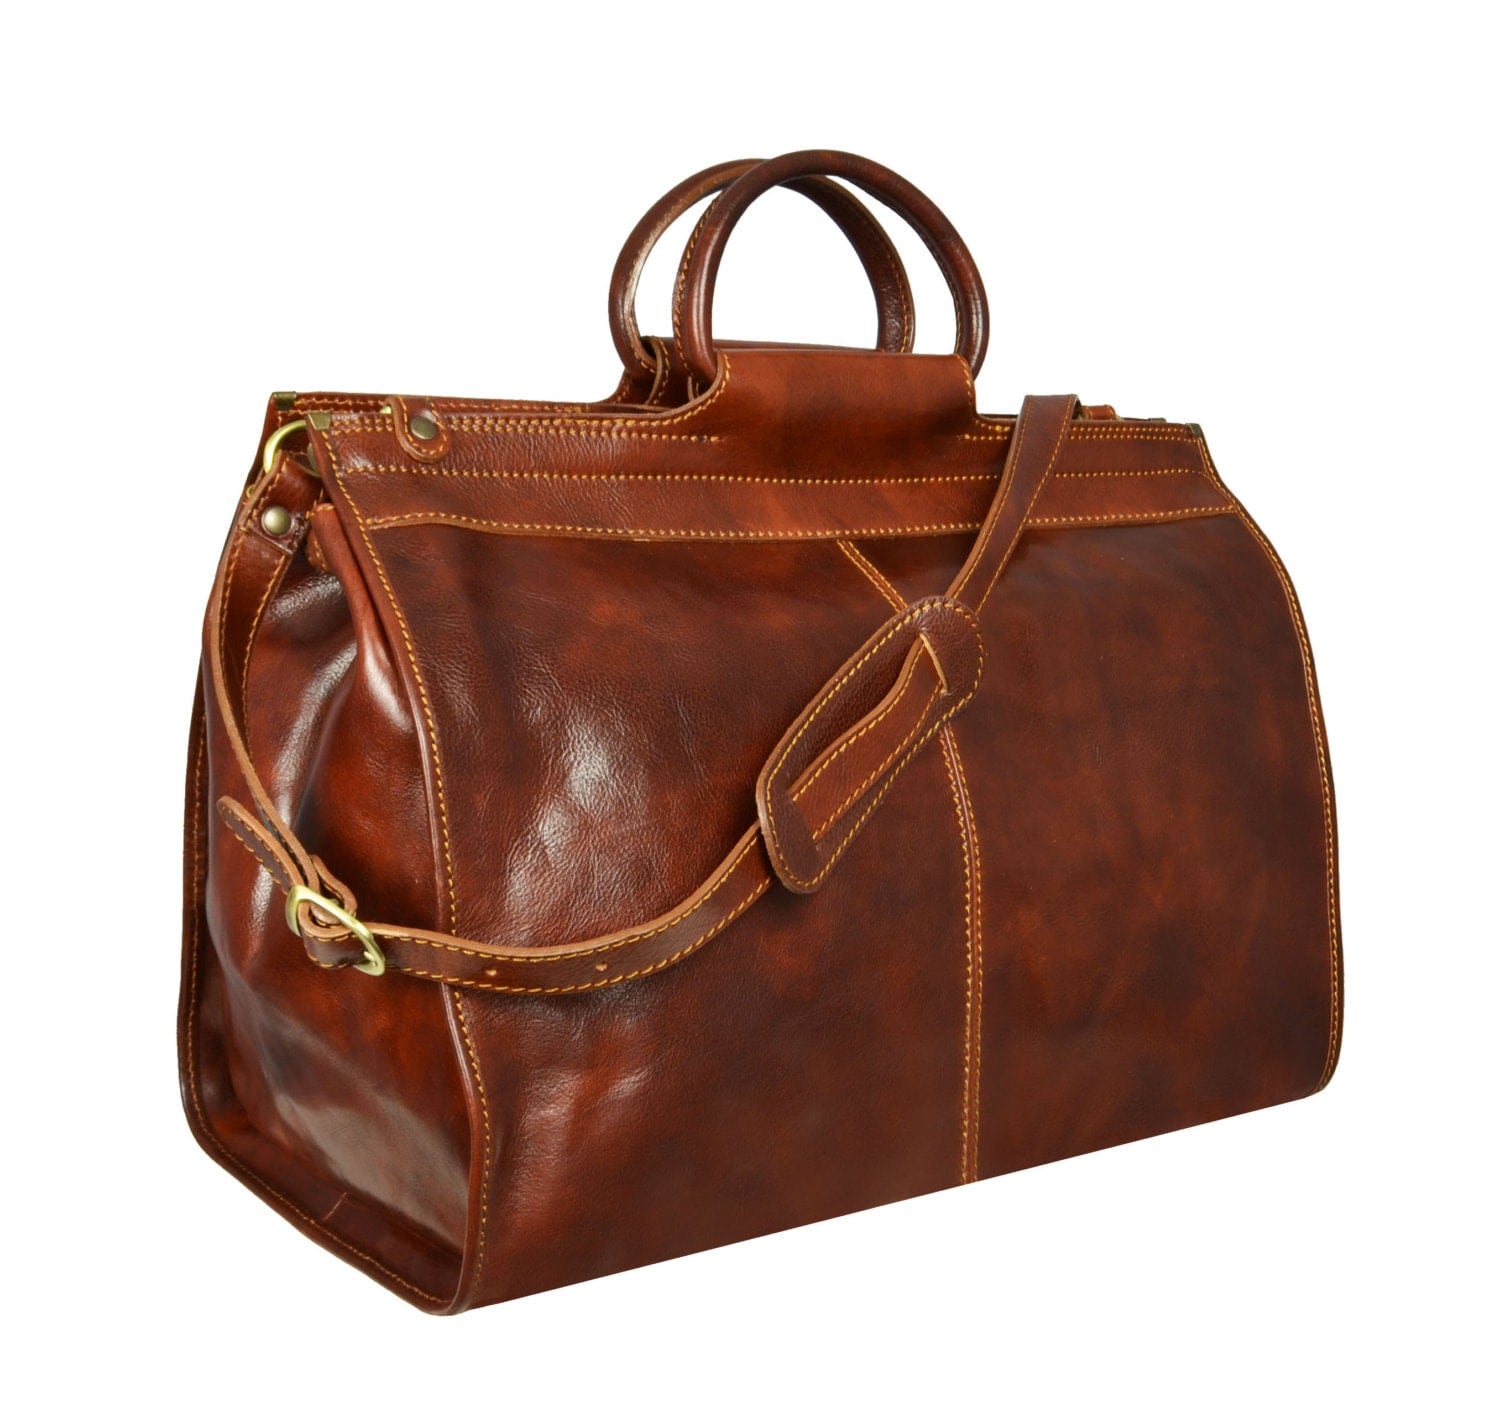 Leather Travel Bag Duffle Bag Duffel Bag Travel Bag